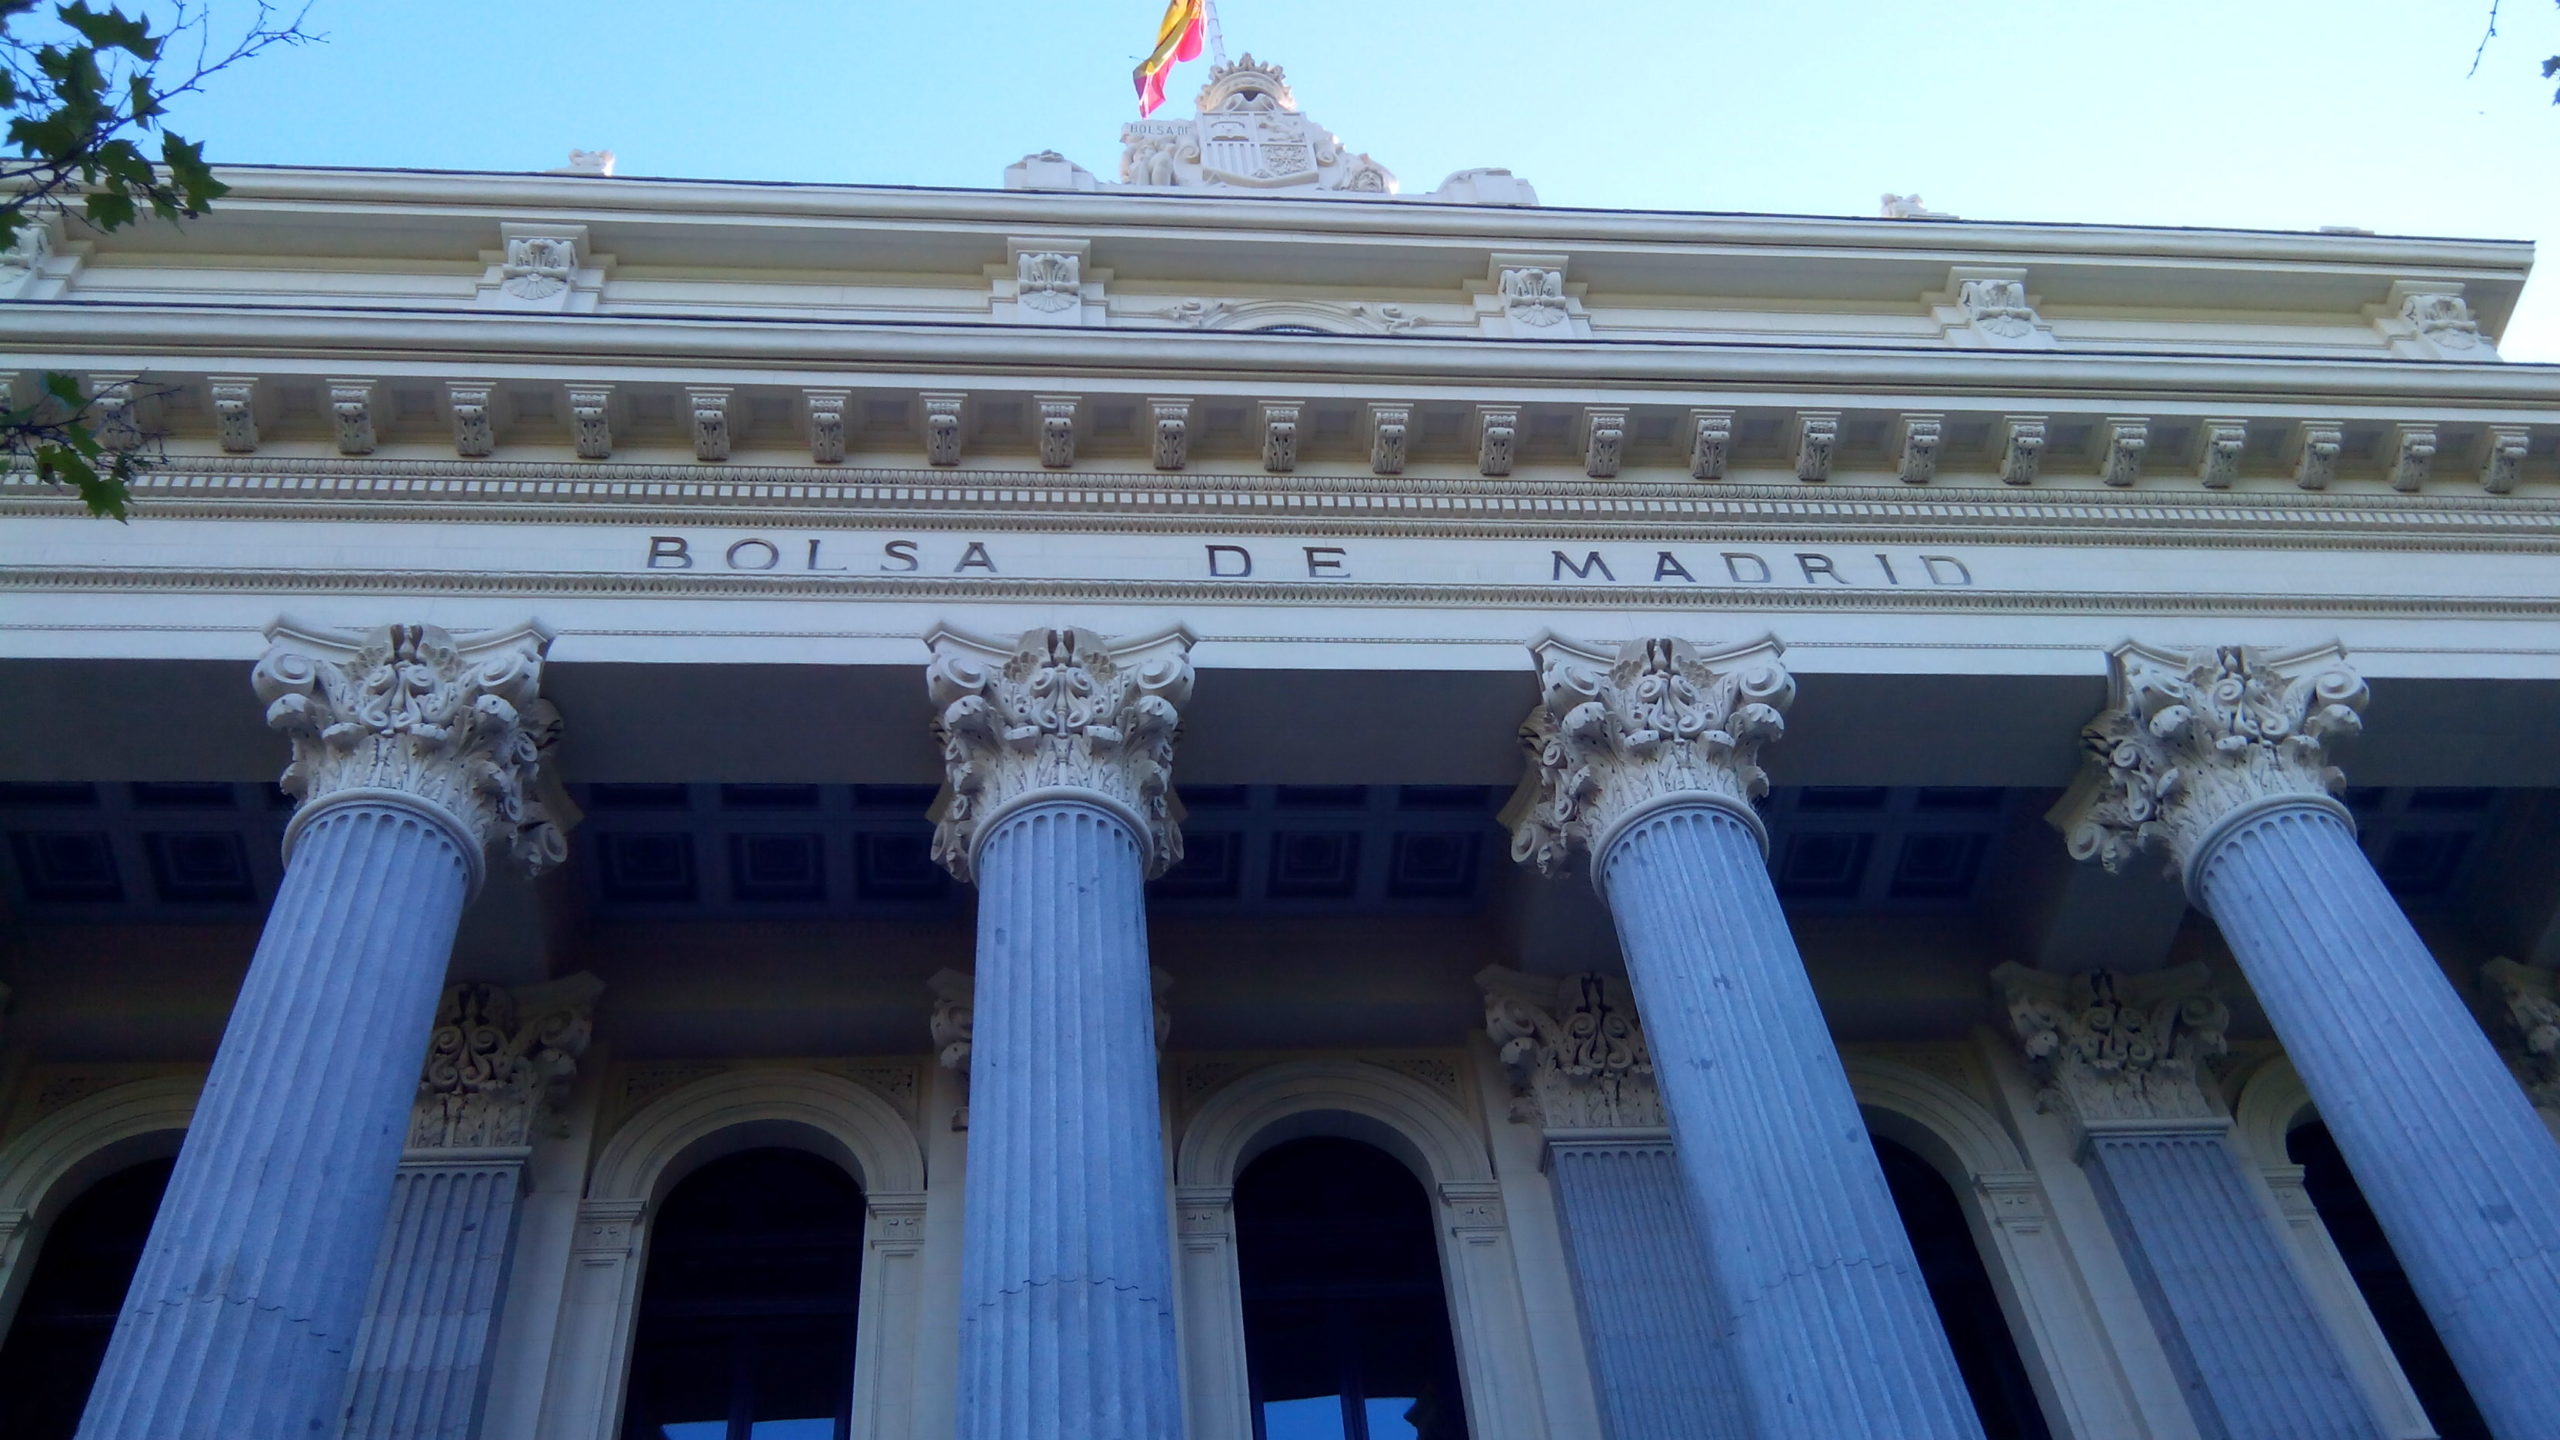 Madrid Stock Exchange building